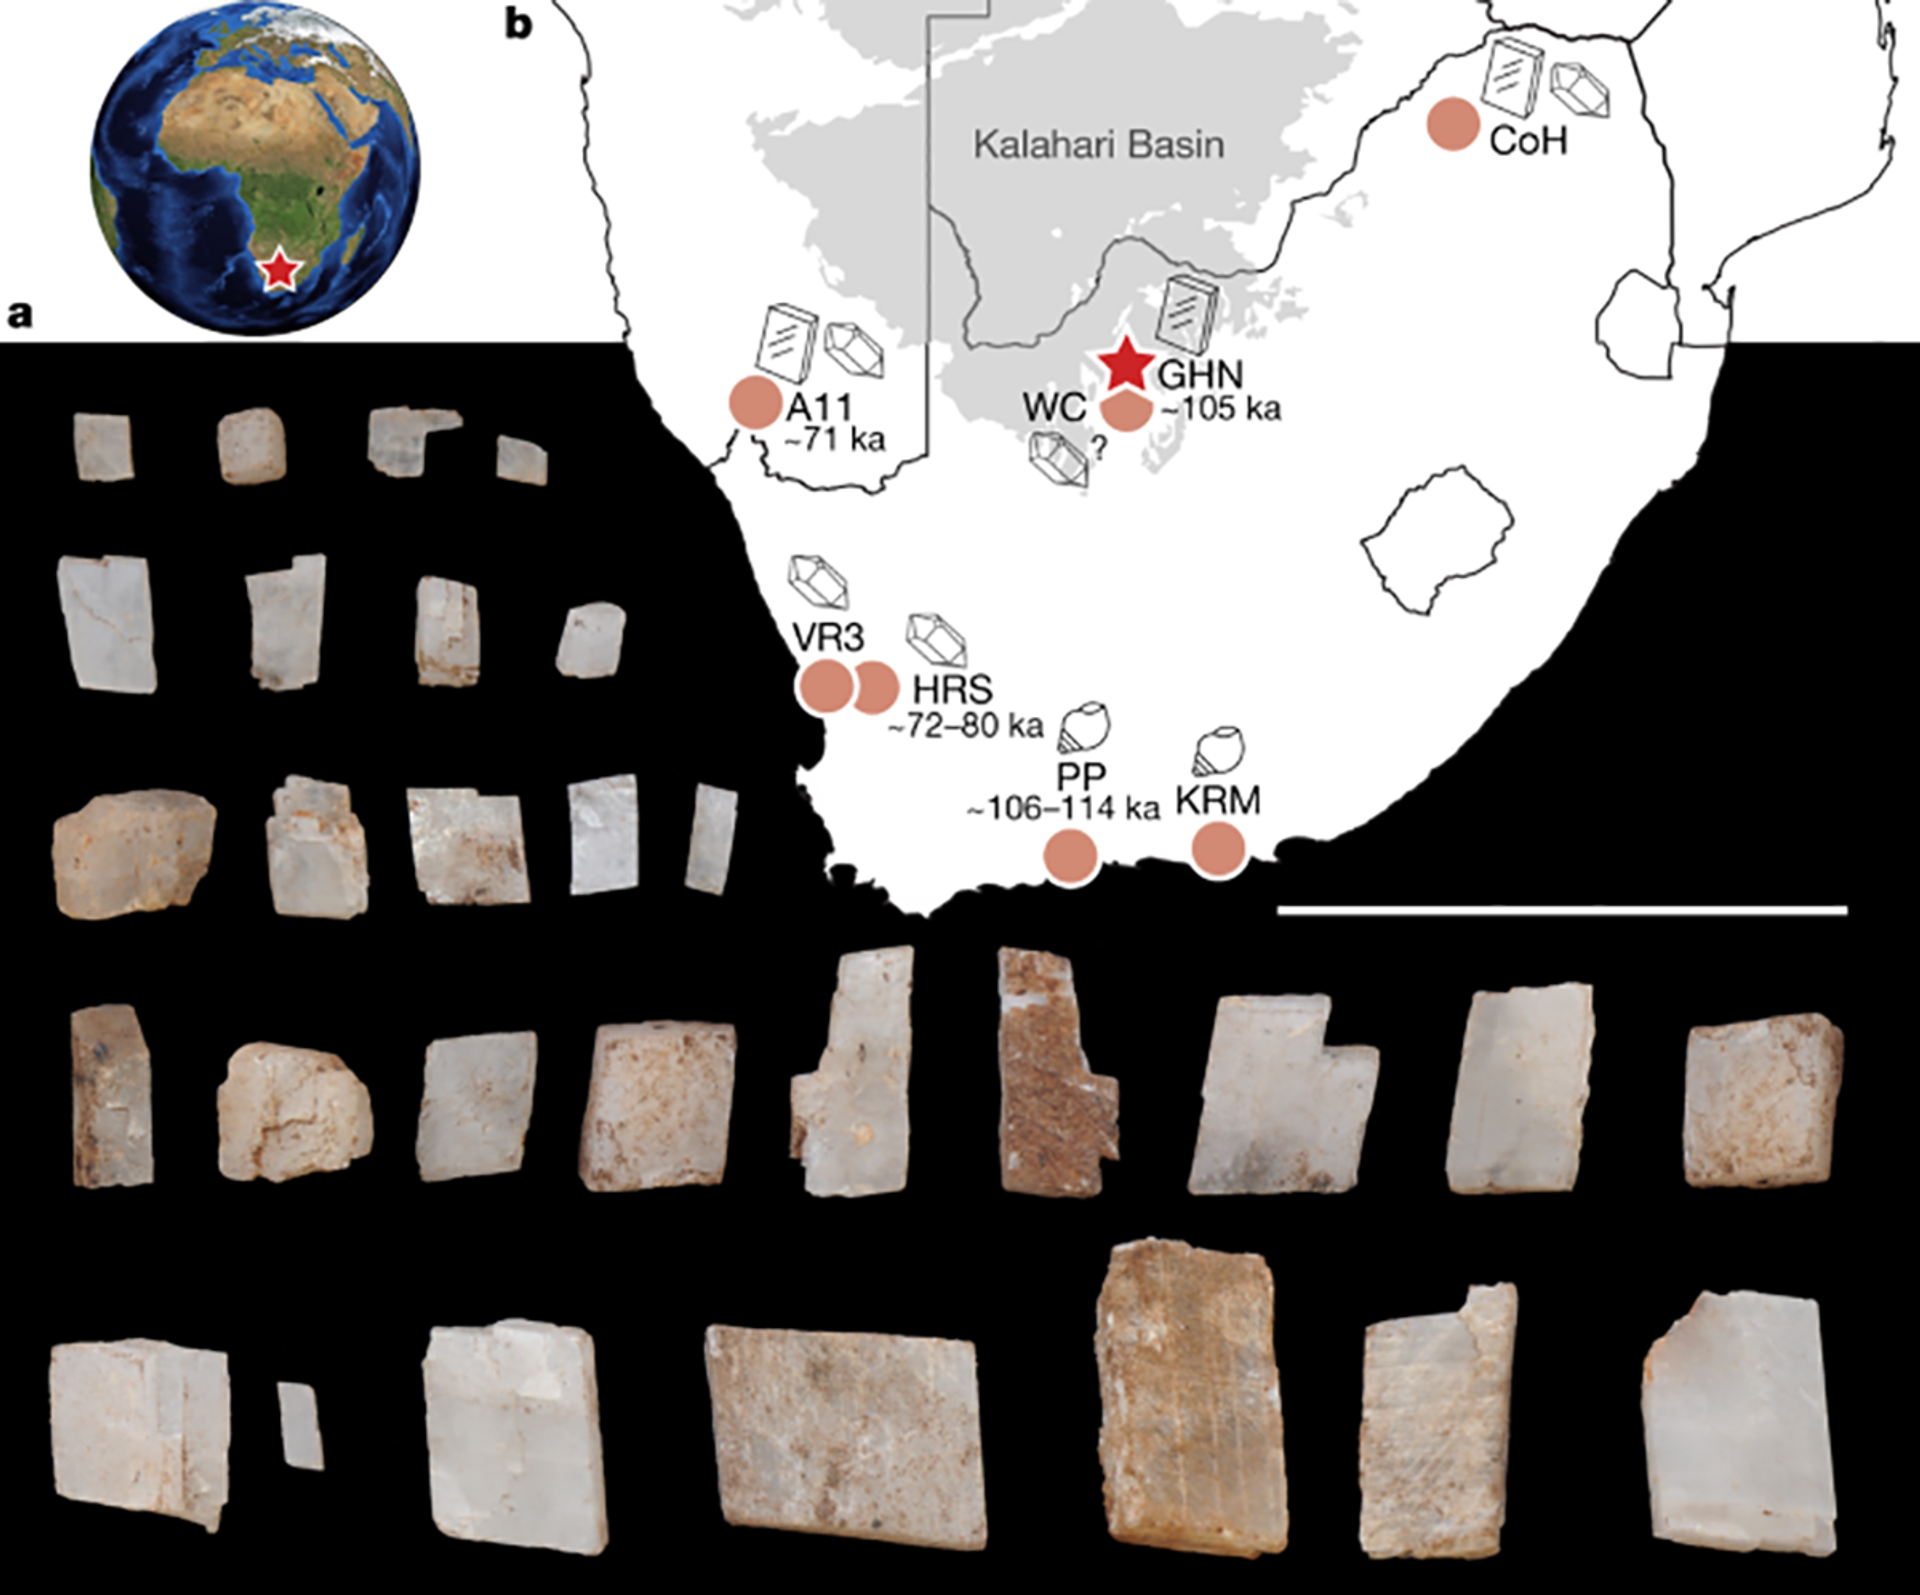 Ancestrais colecionadores: coleção de cristais de 105 mil anos é encontrada na África do Sul (FOTO) - Sputnik Brasil, 1920, 01.04.2021